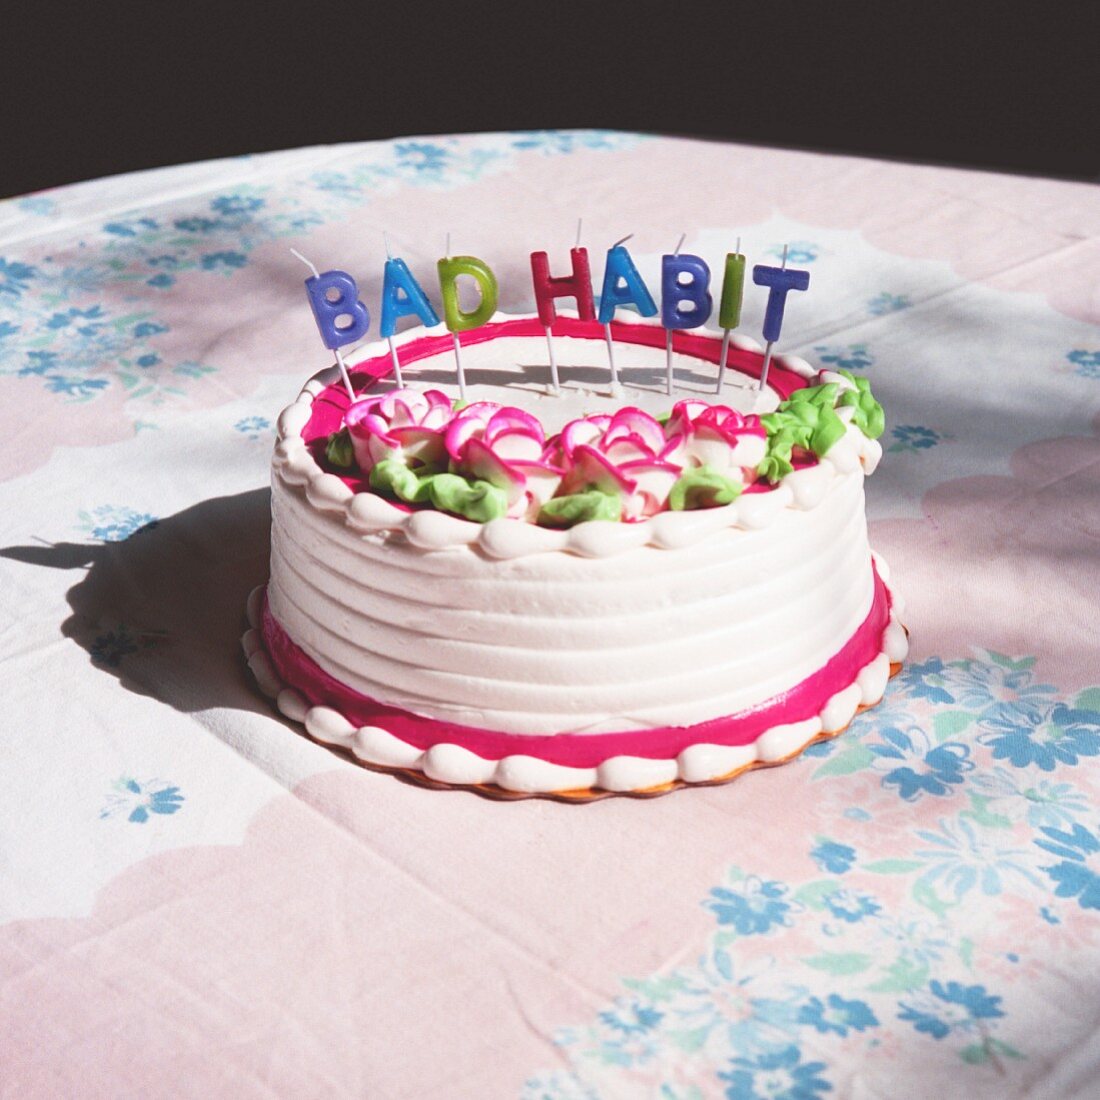 Festliche Torte mit Schriftzug Bad Habit aus Kerzen